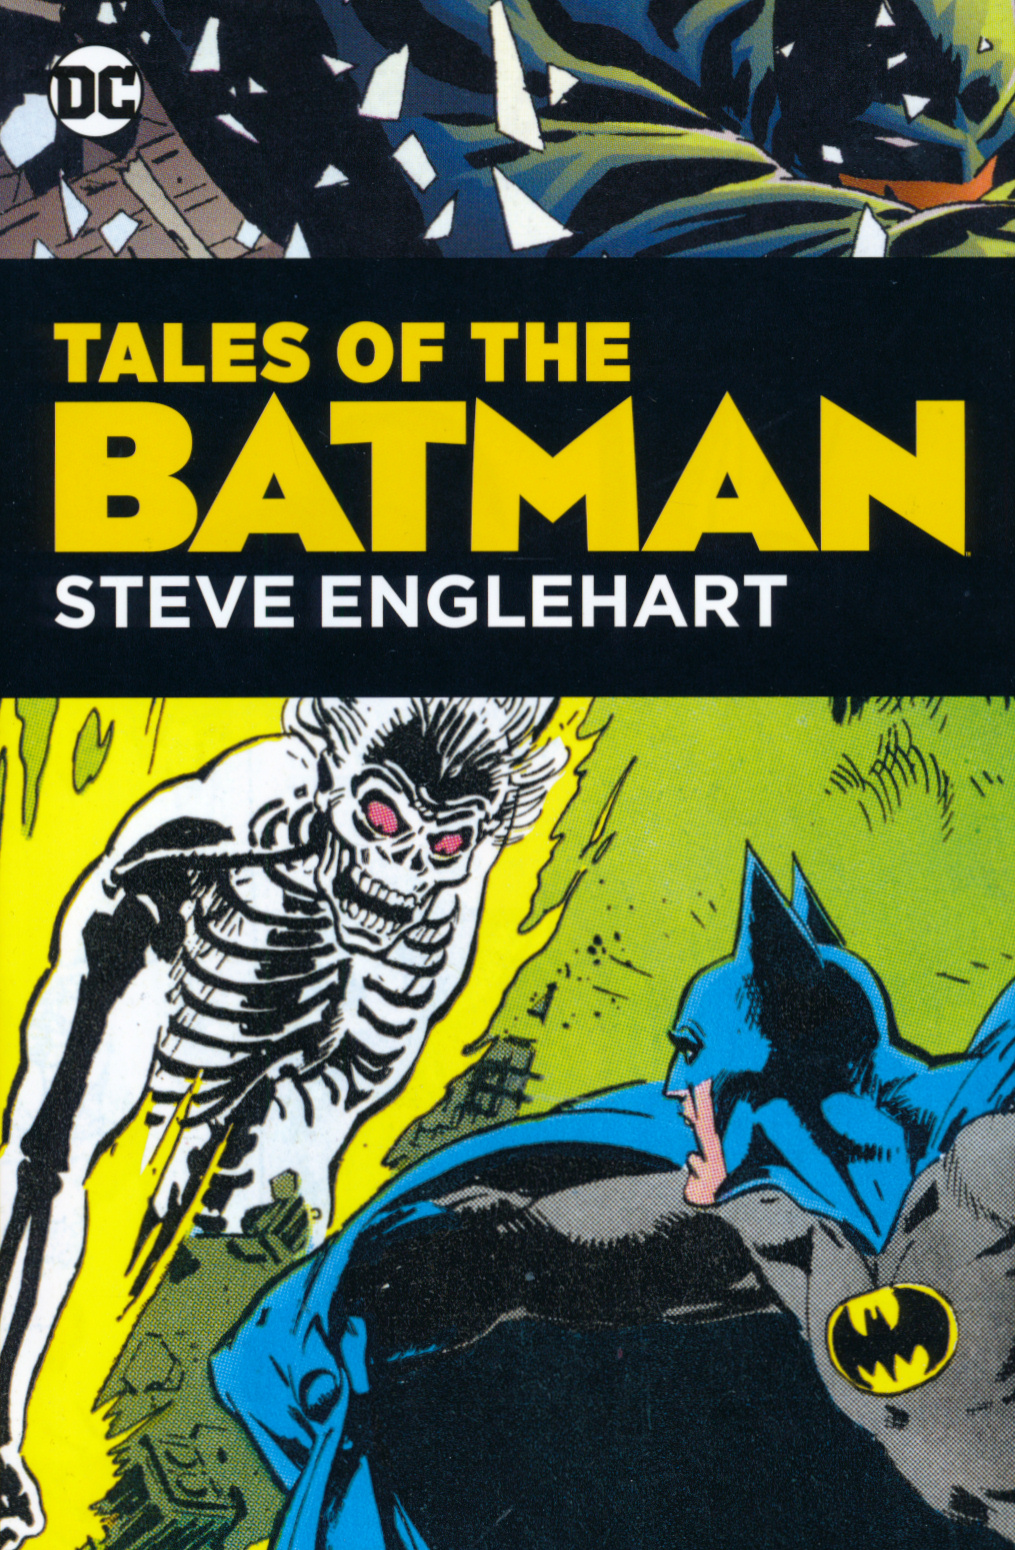 The Batman Chronicles #19 by Steve Englehart